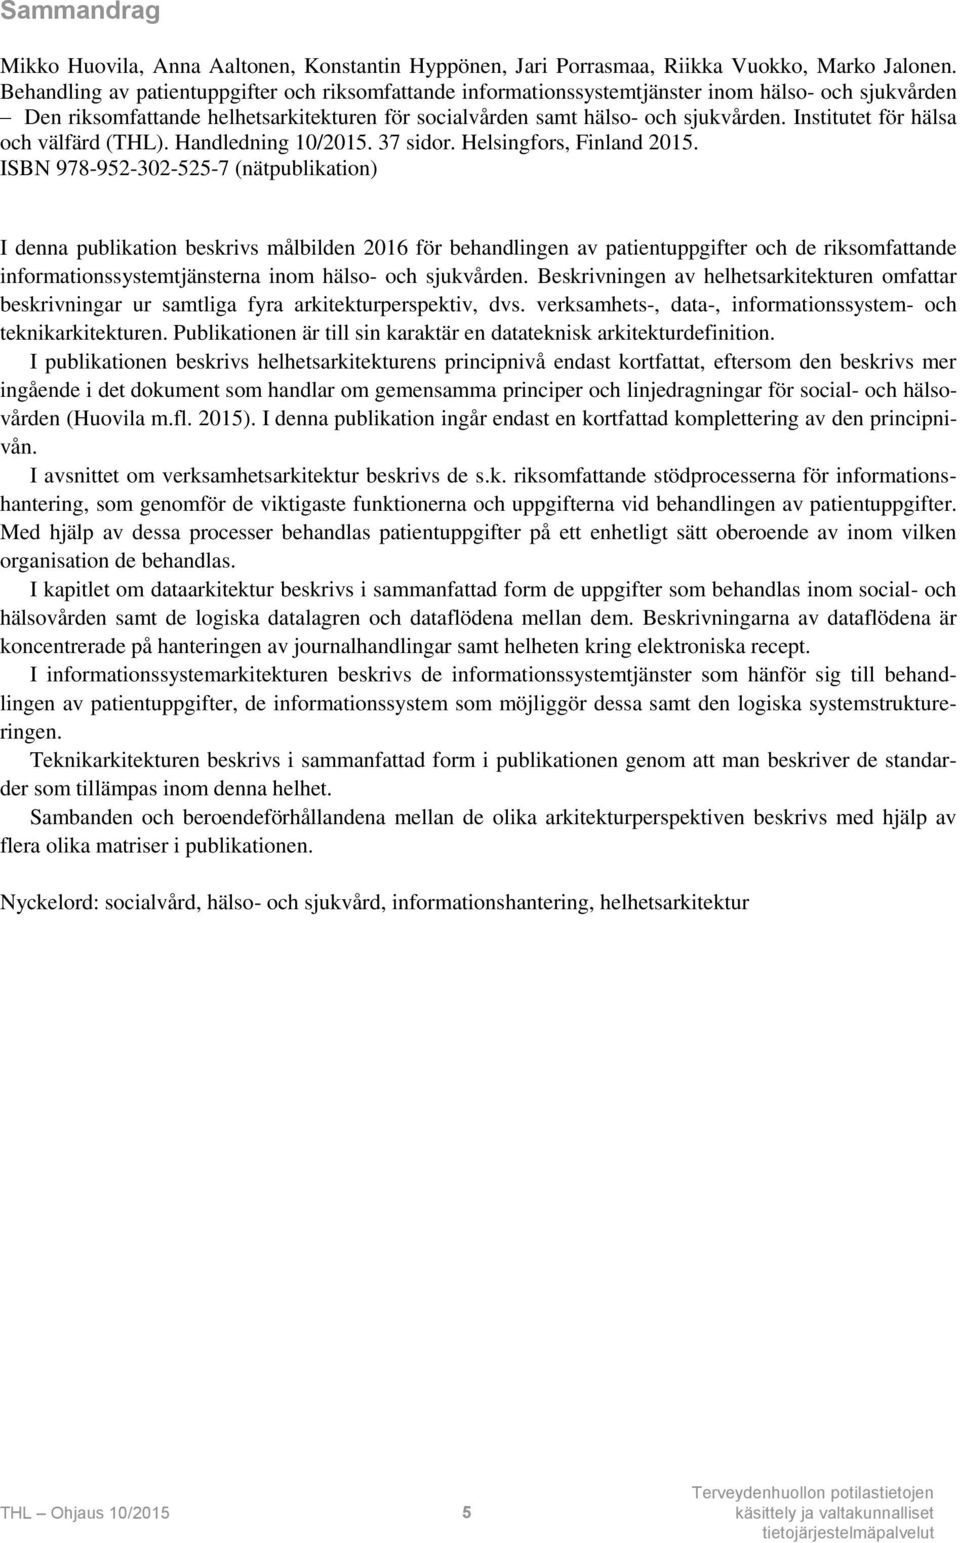 Institutet för hälsa och välfärd (THL). Handledning 10/2015. 37 sidor. Helsingfors, Finland 2015.